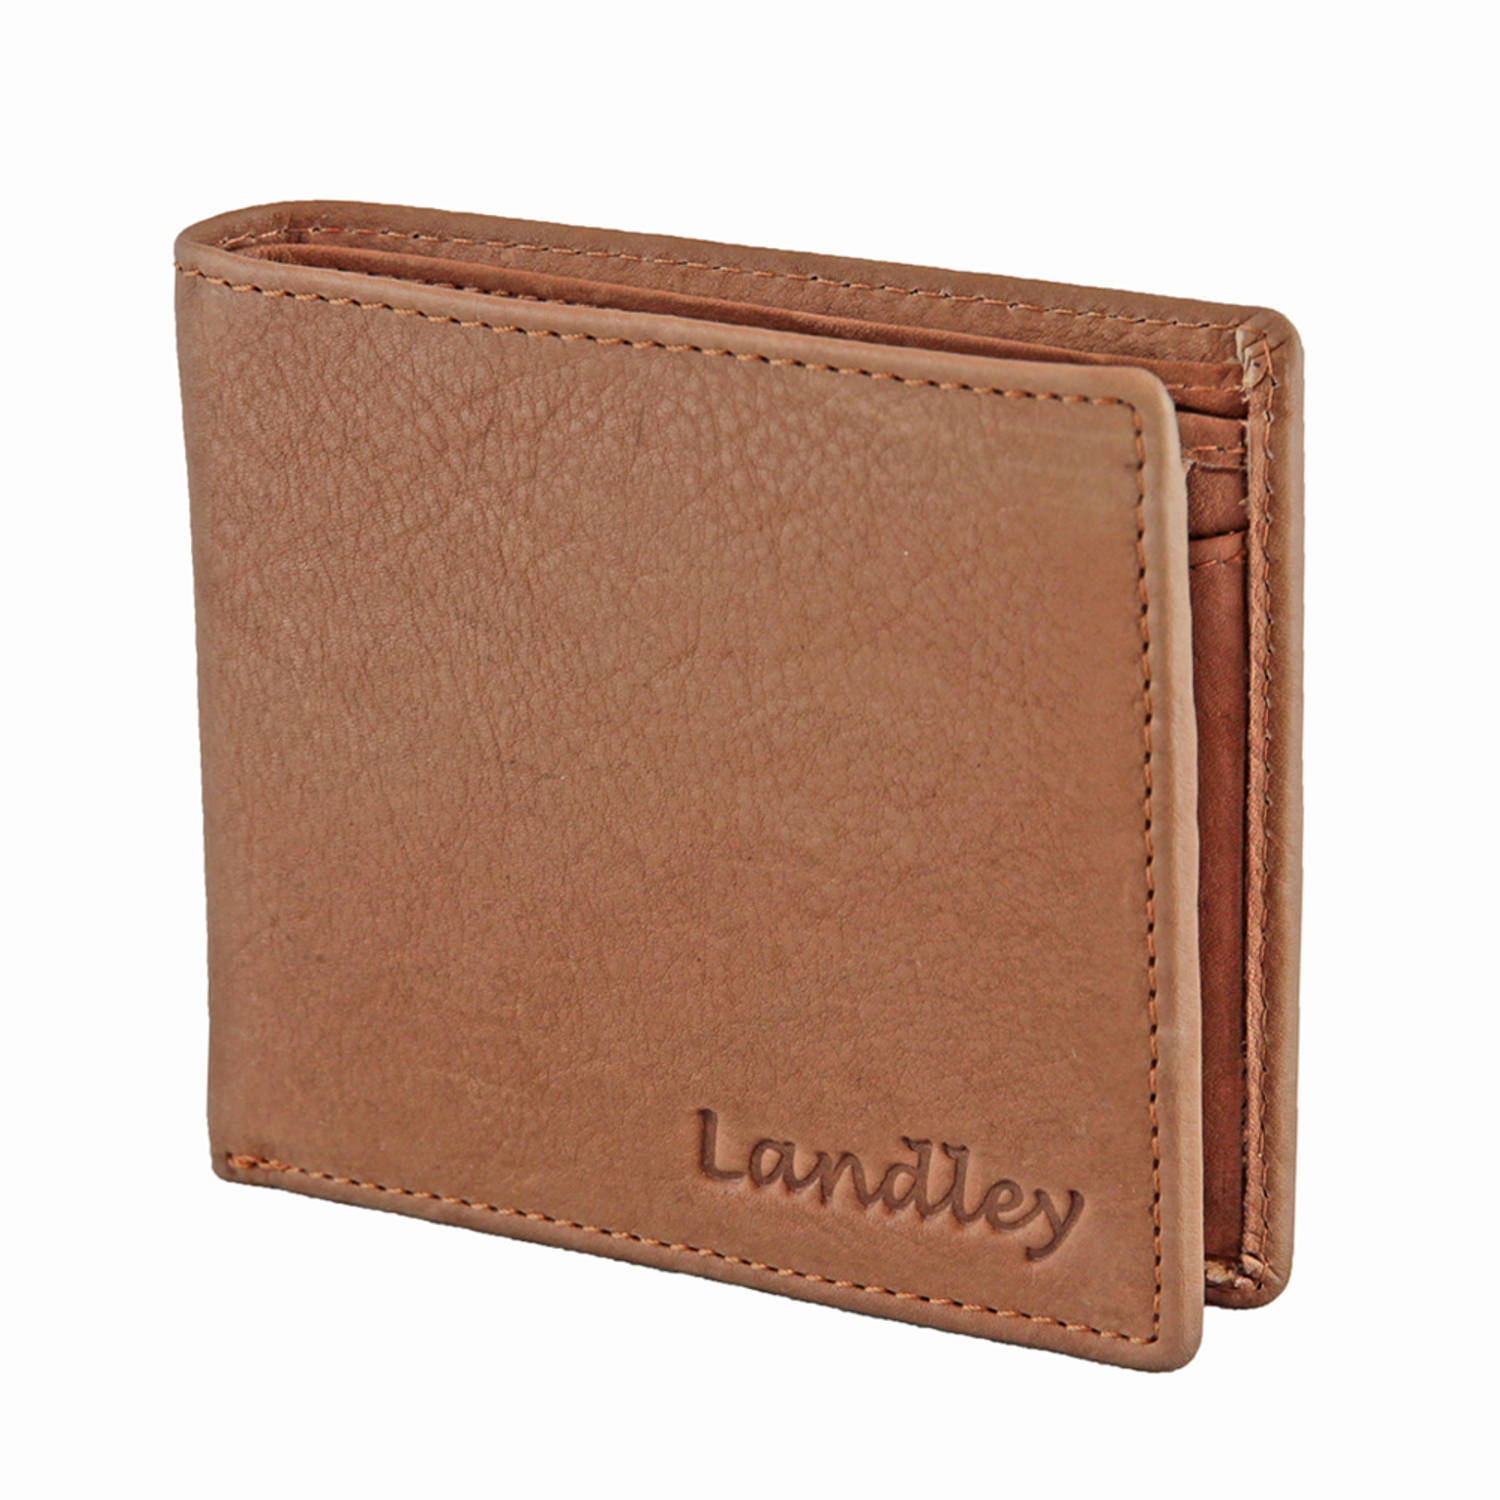 Landley Heren Portemonnee Leer - Plat model - RFID Bescherming tegen skimmen - Cognac